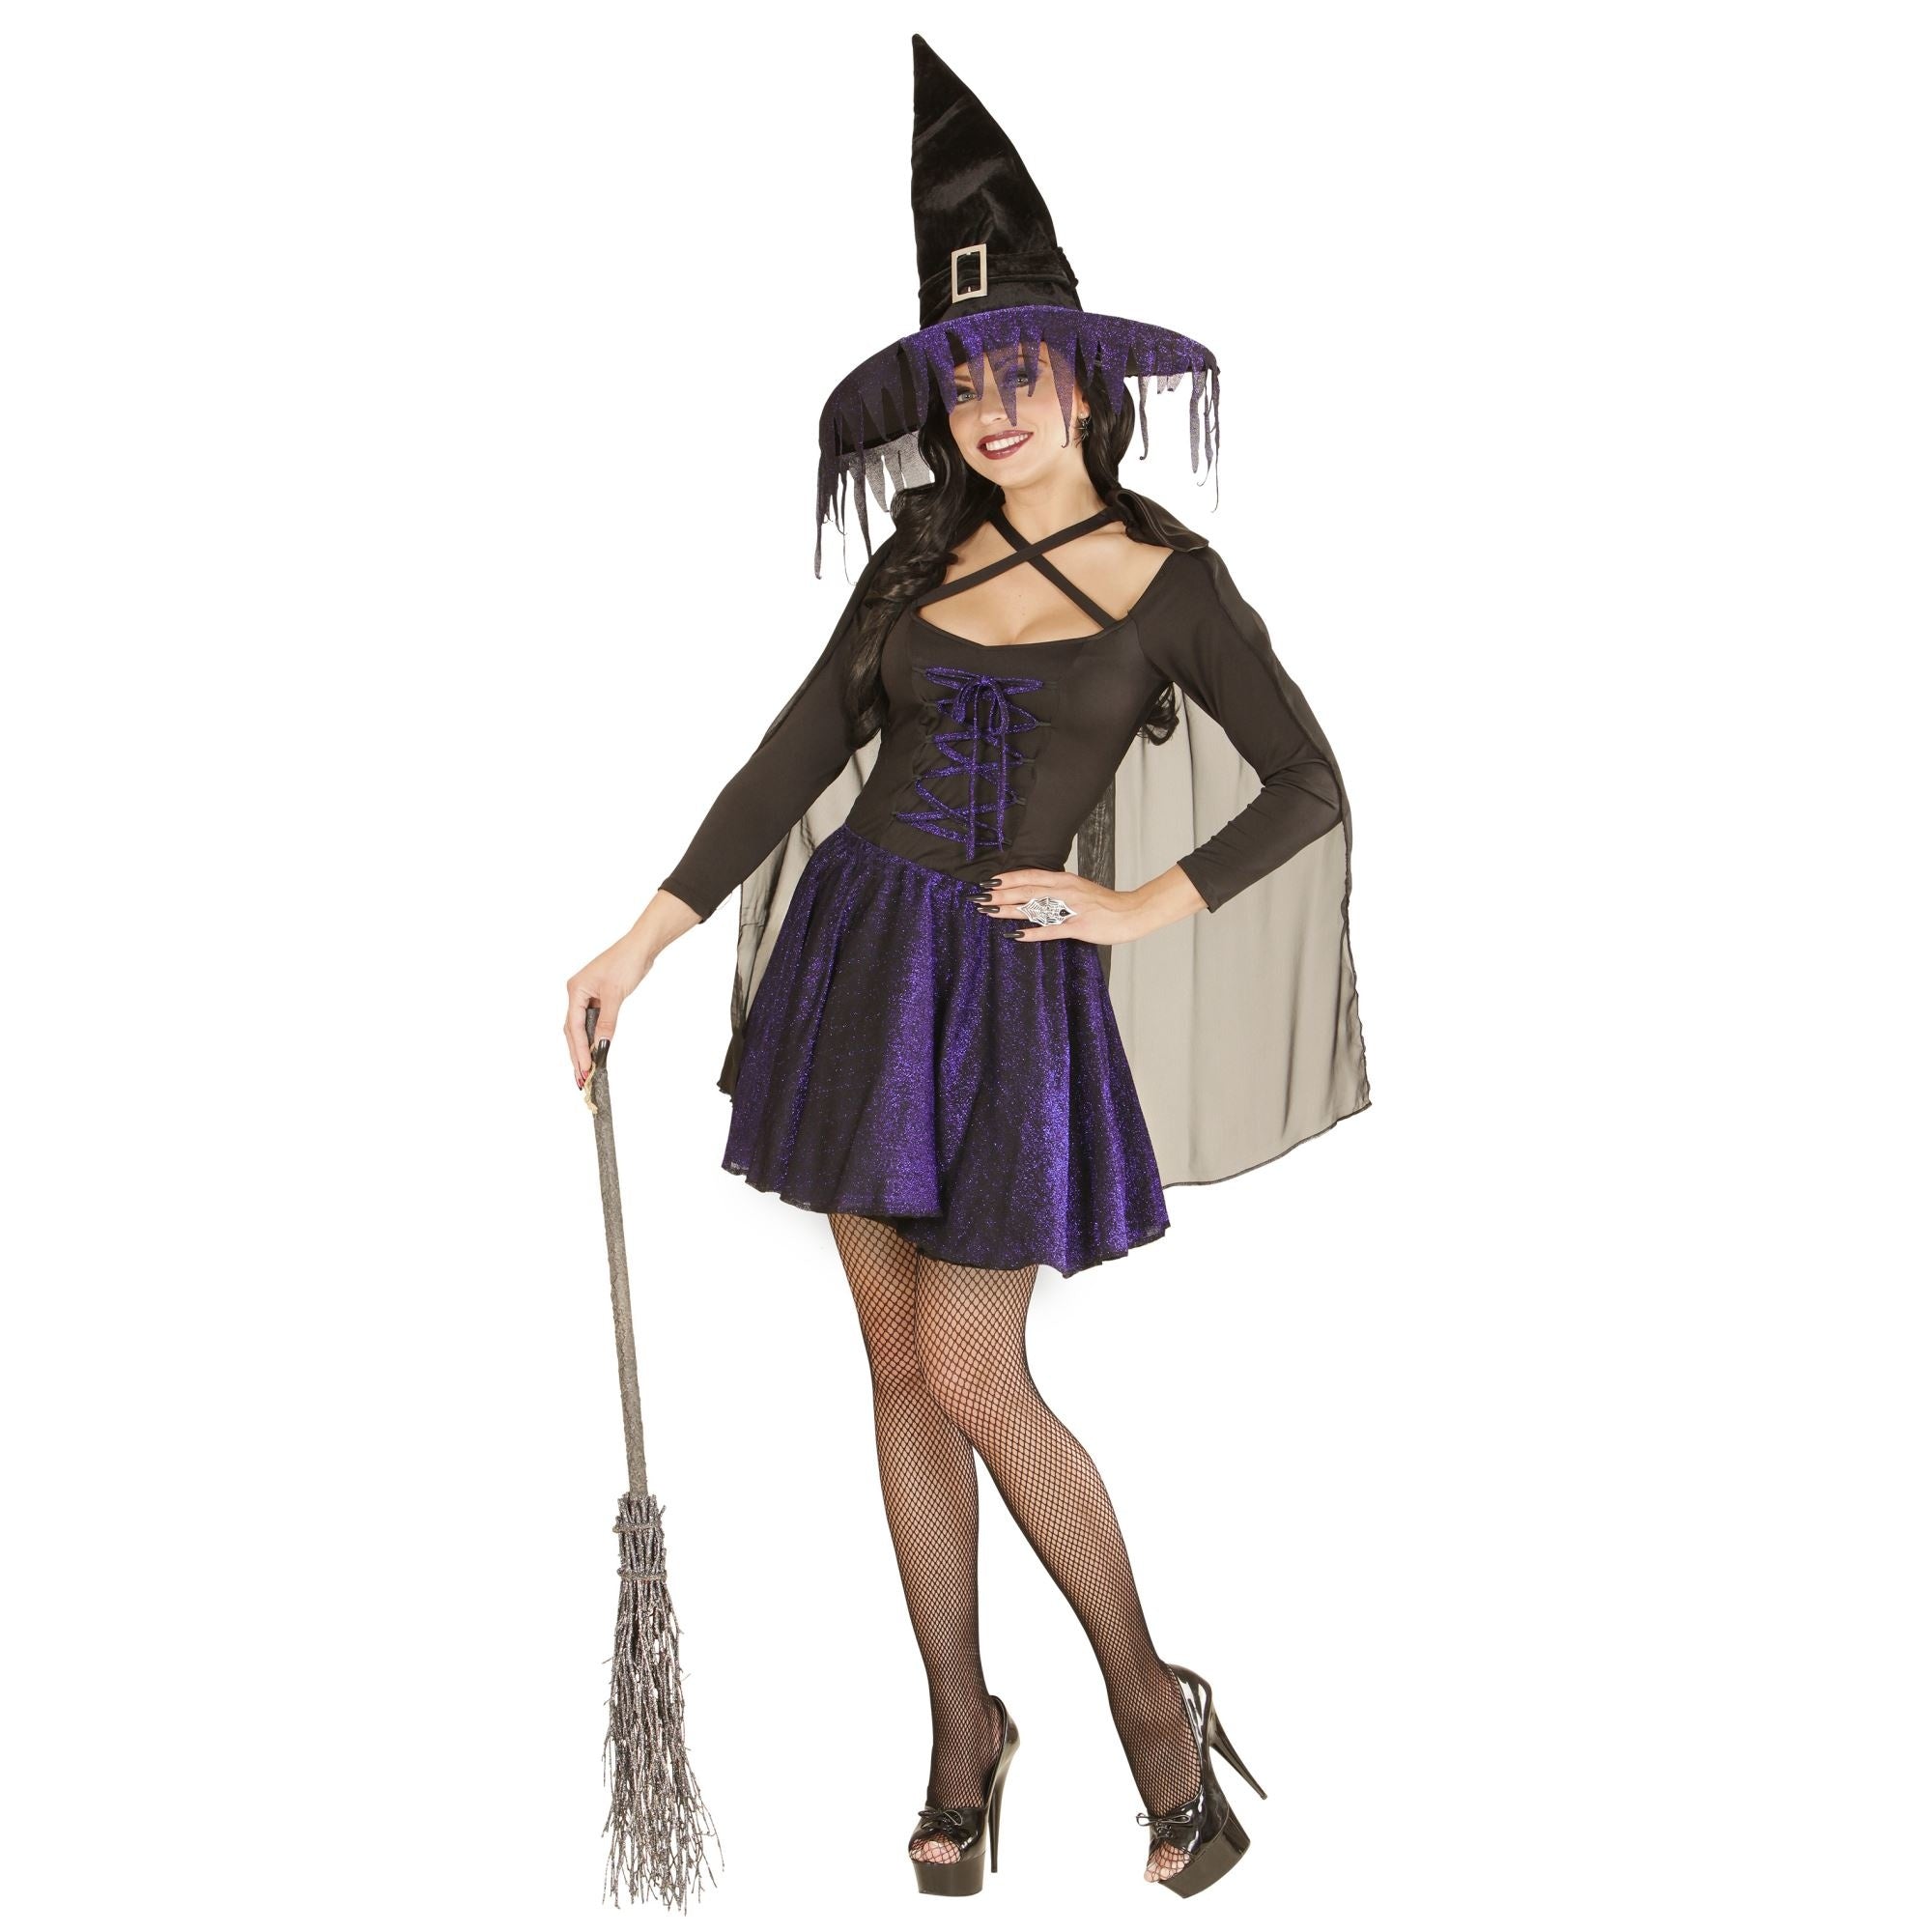 "Blauwzwart heksen Halloween kostuum voor dames - Verkleedkleding - Medium"